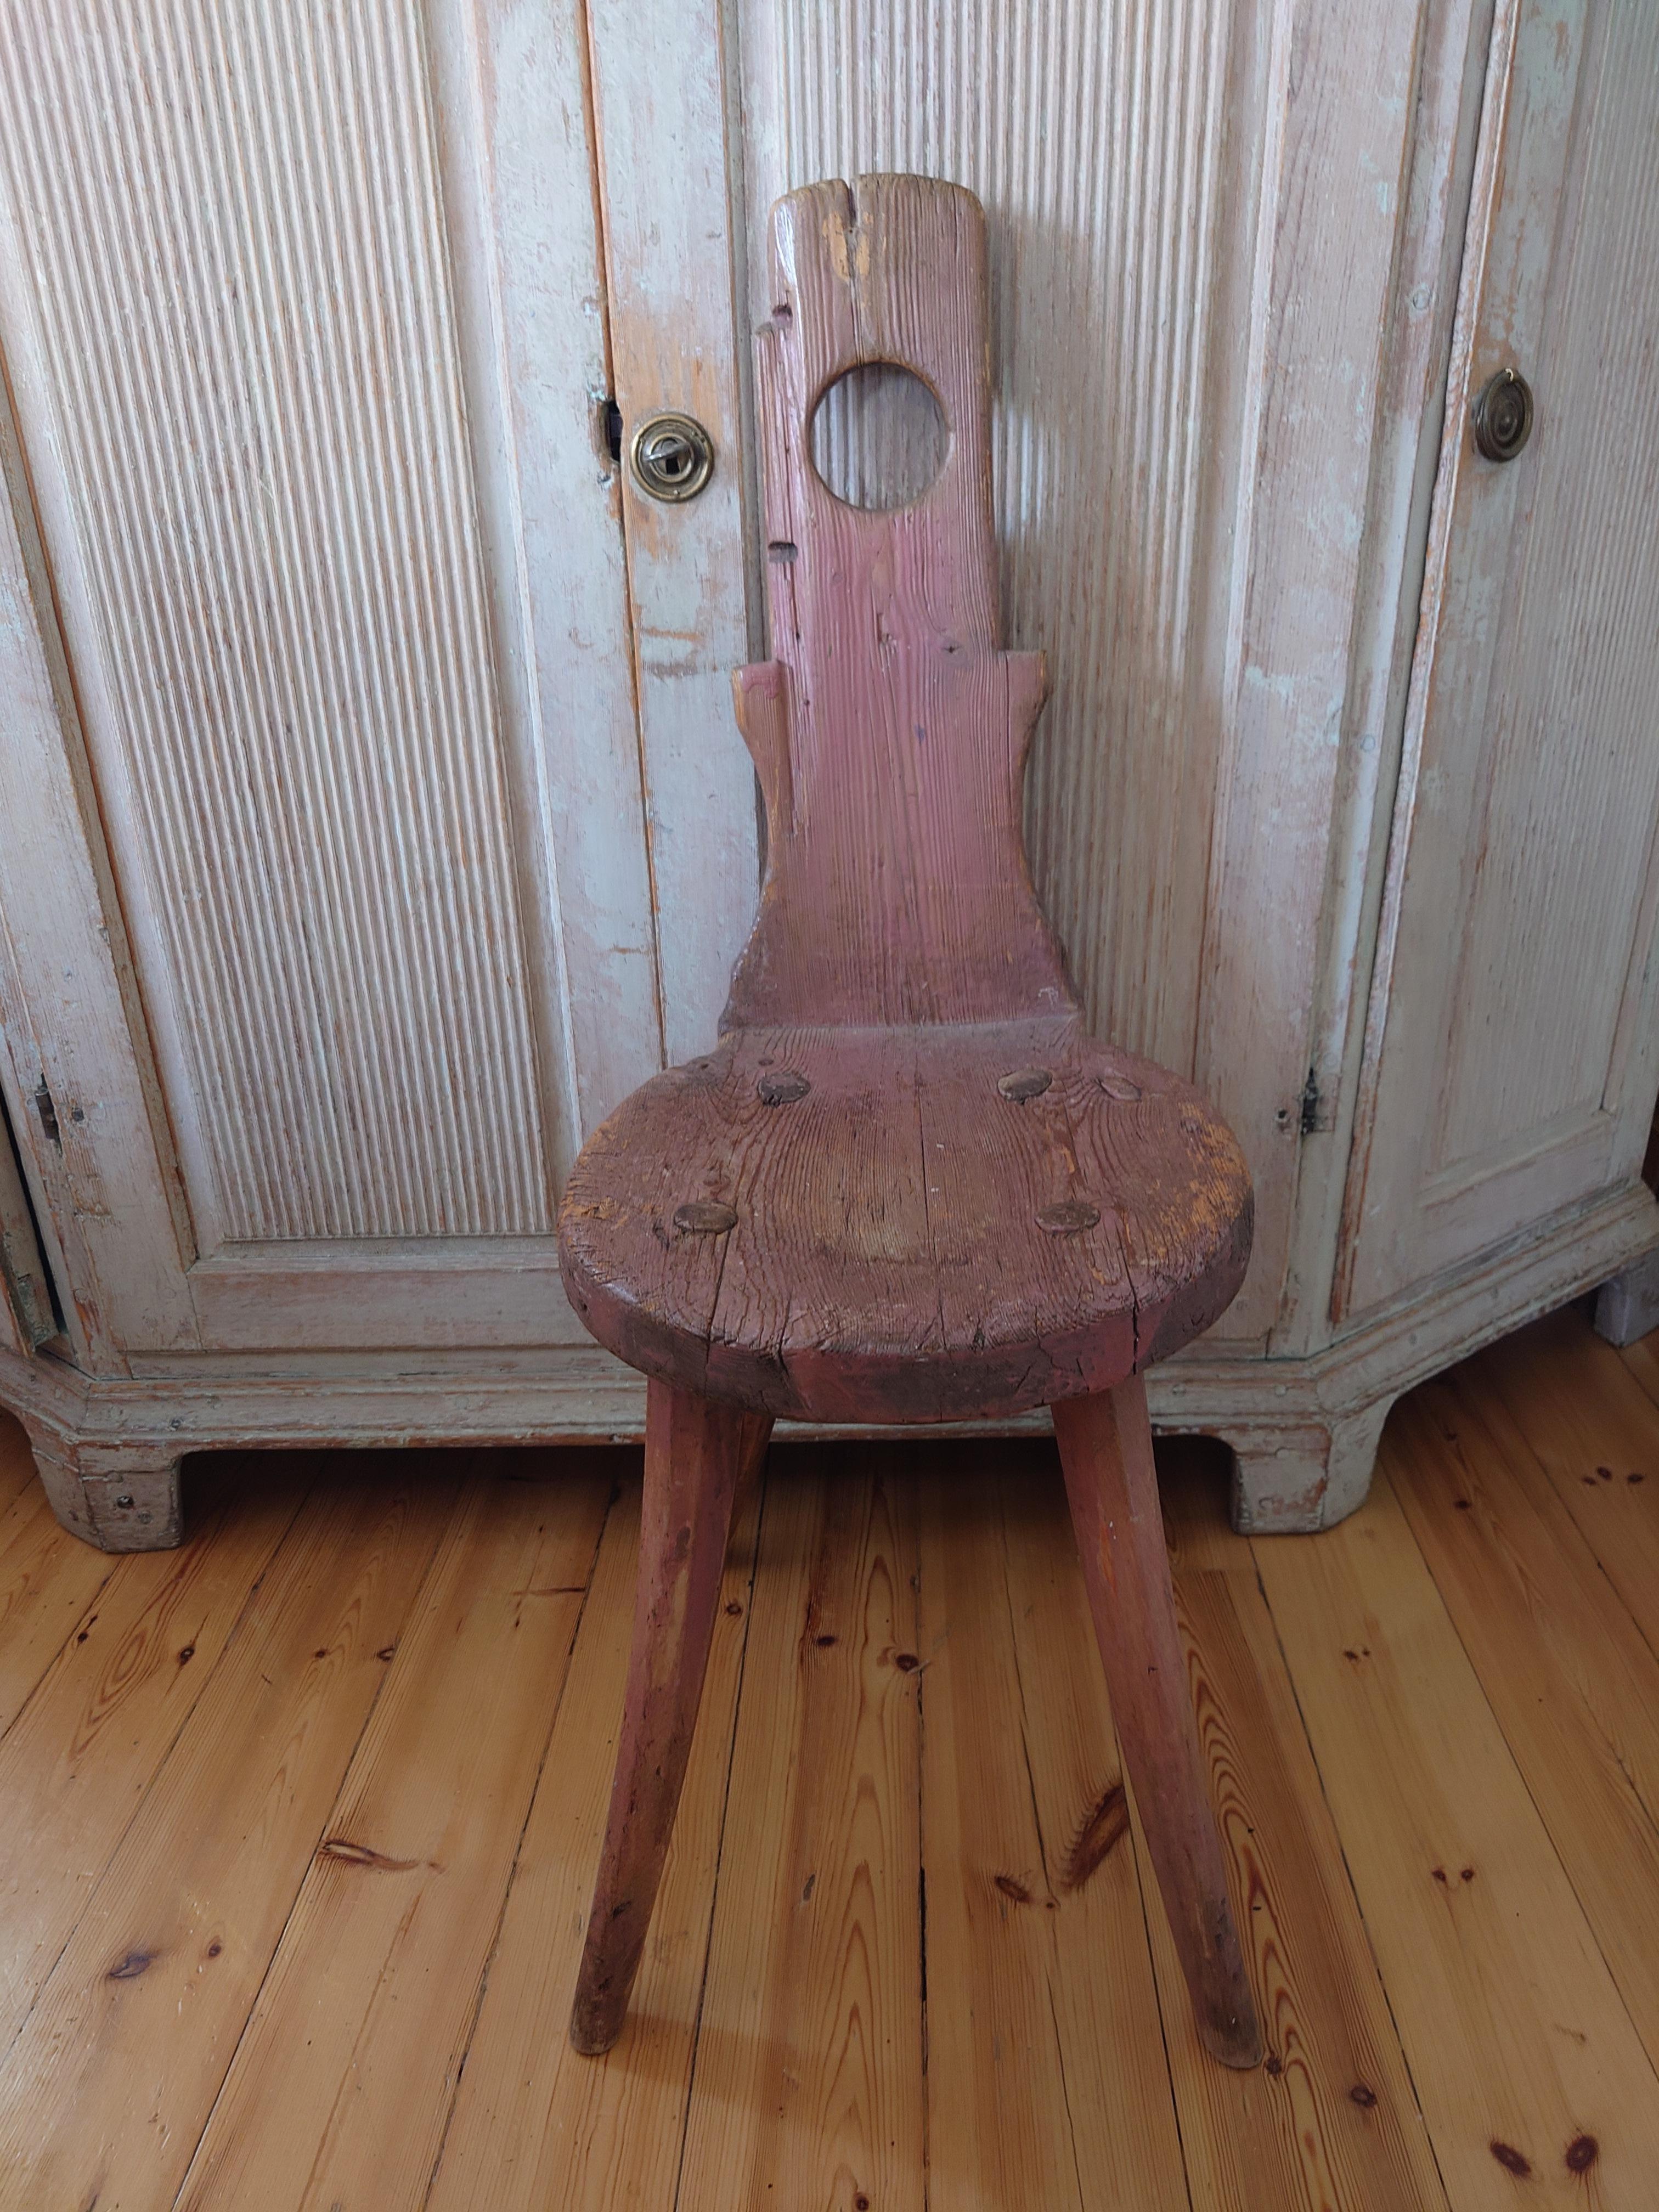 Schwedischer Primitiv-Volkskunst-Stuhl aus Nordschweden, 18.
Dieser charmante Stuhl ist ein echtes Stück Geschichte. Er wurde um 1850 in Nordschweden in Handarbeit hergestellt.
Der Stuhl ist ein charmantes, primitives Modell, das von Hand aus